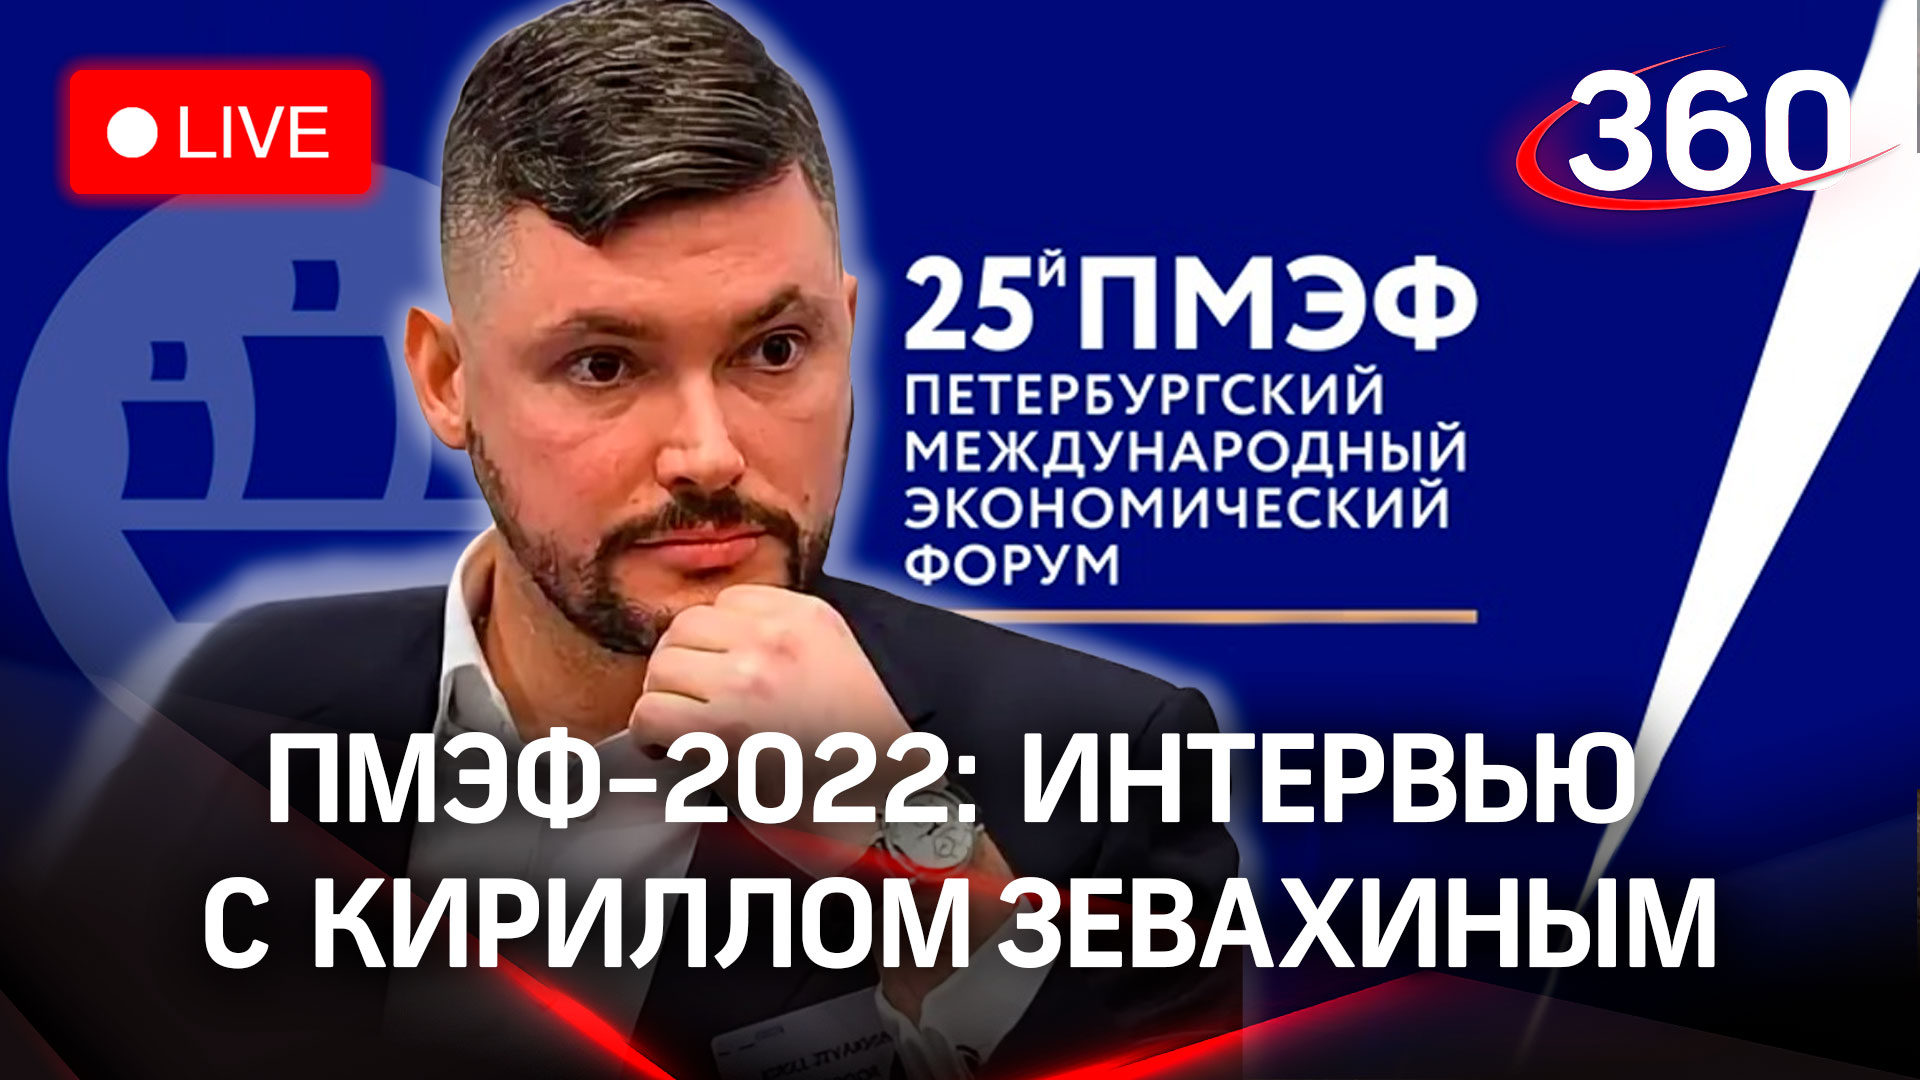 ПМЭФ-2022: интервью с Кириллом Зевахиным, владельцем и основателем группы компаний Светогор